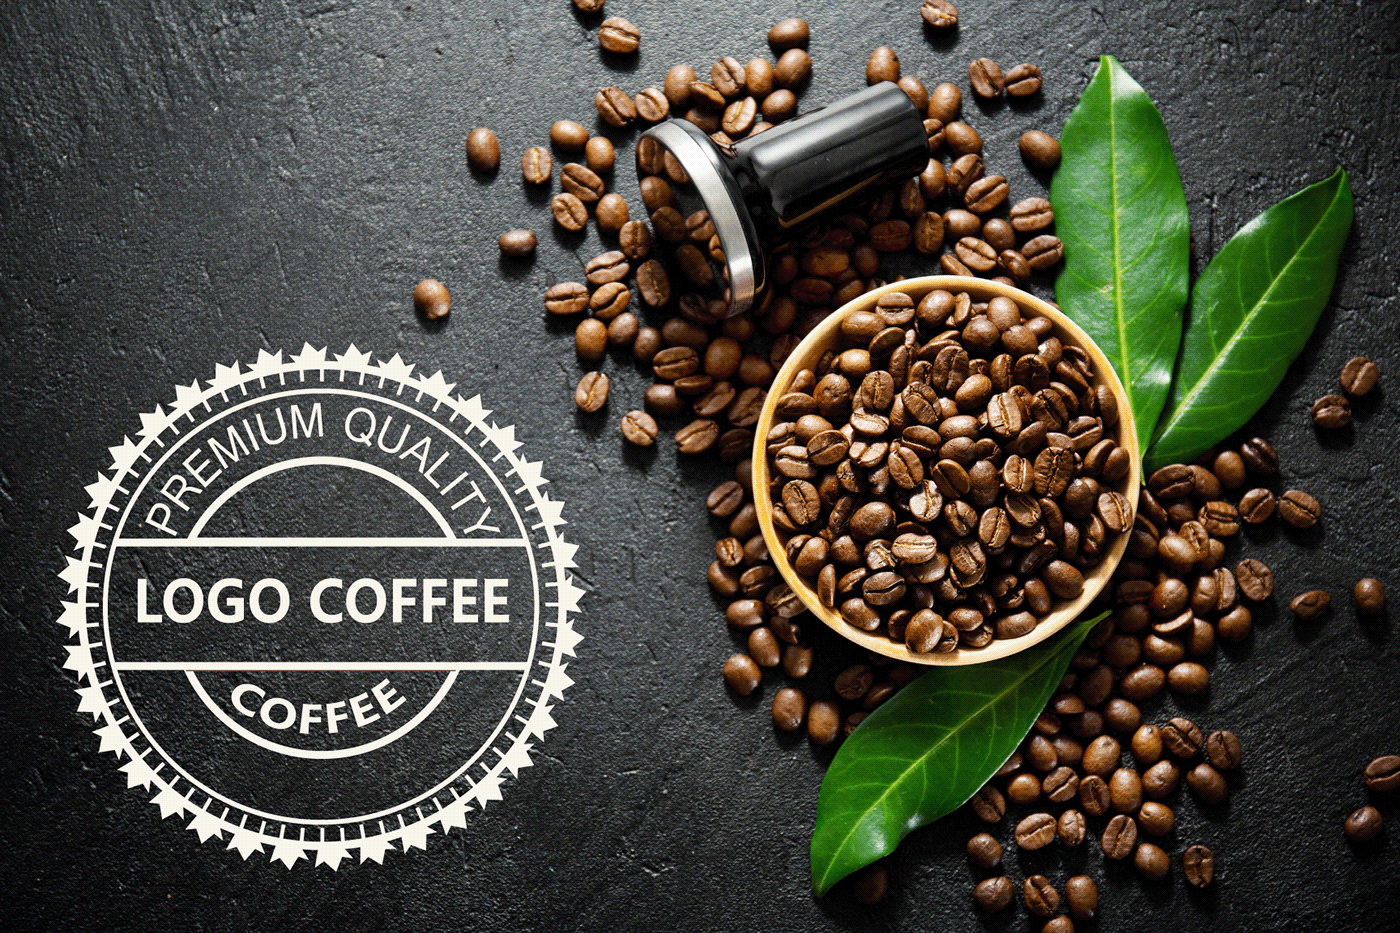 Он мелет кофе. Кофе. Реклама кофе. Логотип кофейни. Кофе в зернах.